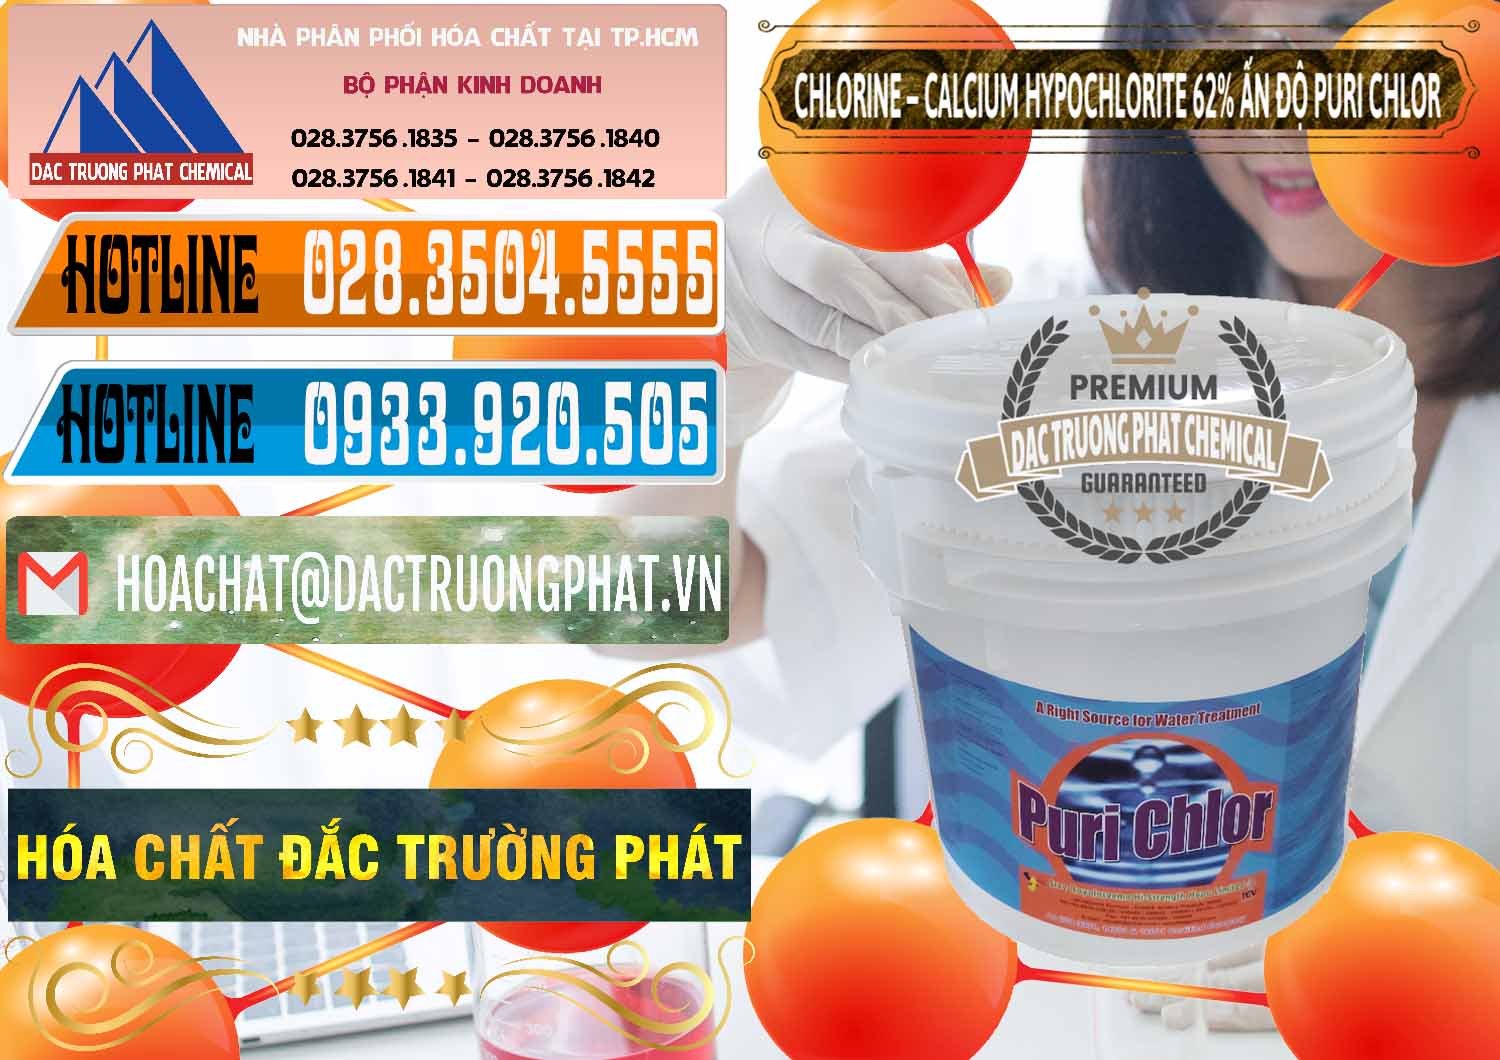 Nơi bán ( phân phối ) Chlorine – Clorin 62% Puri Chlo Ấn Độ India - 0052 - Nhà phân phối - bán hóa chất tại TP.HCM - stmp.net